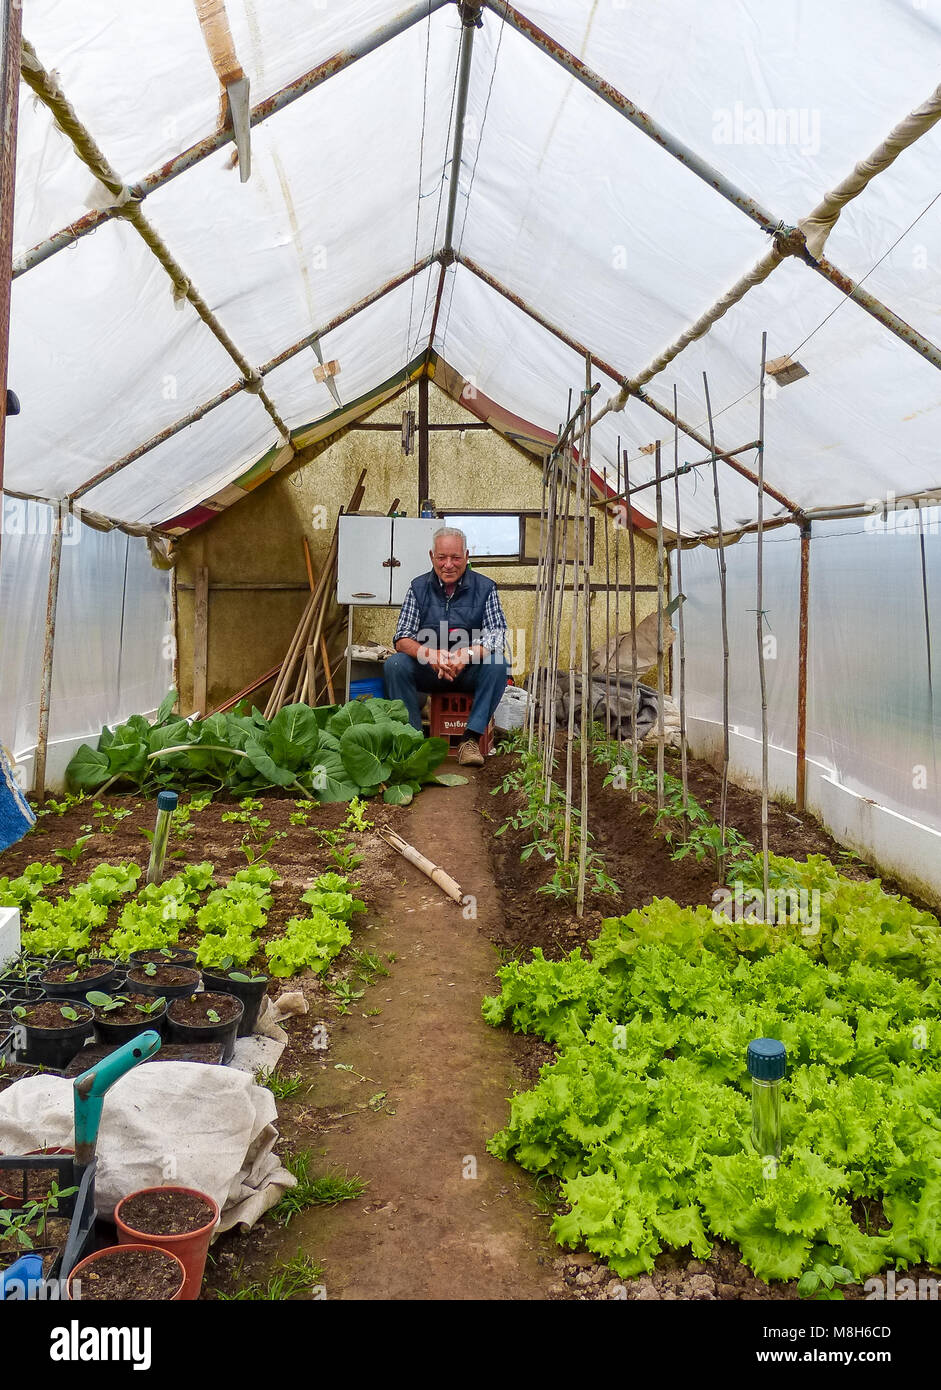 Gruppe von Zuteilungs-Parzellen, wo Land für Rentner parceled, um dort eigenes Gemüse als Hobby anzubauen - Trient, Norditalien, Europa Stockfoto